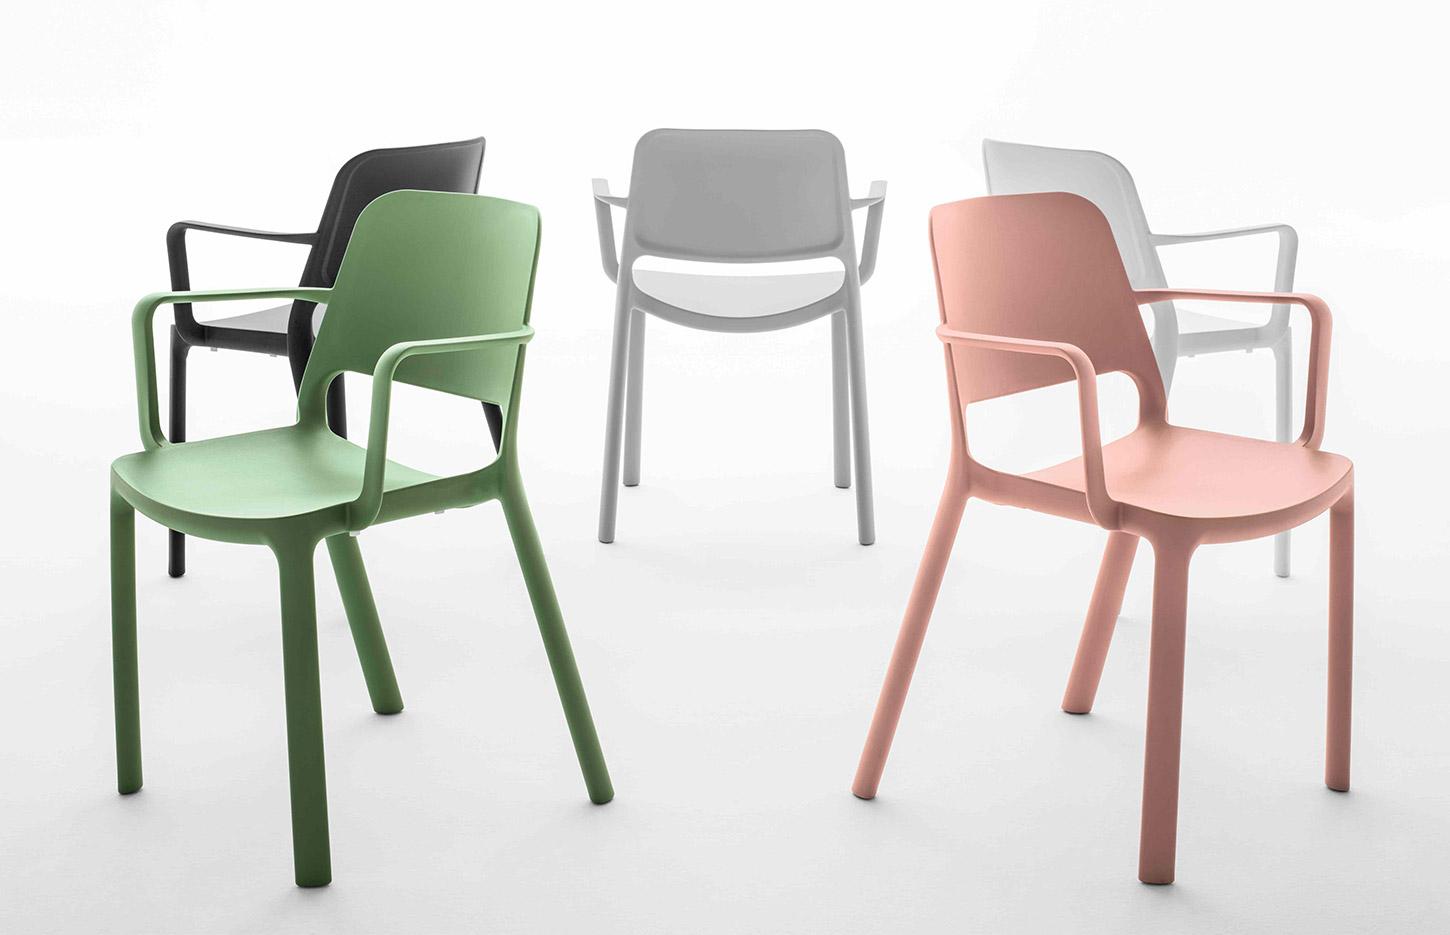 Chaise en polypropylène avec accoudoirs et coussin en option, gamme Lugano, France Bureau